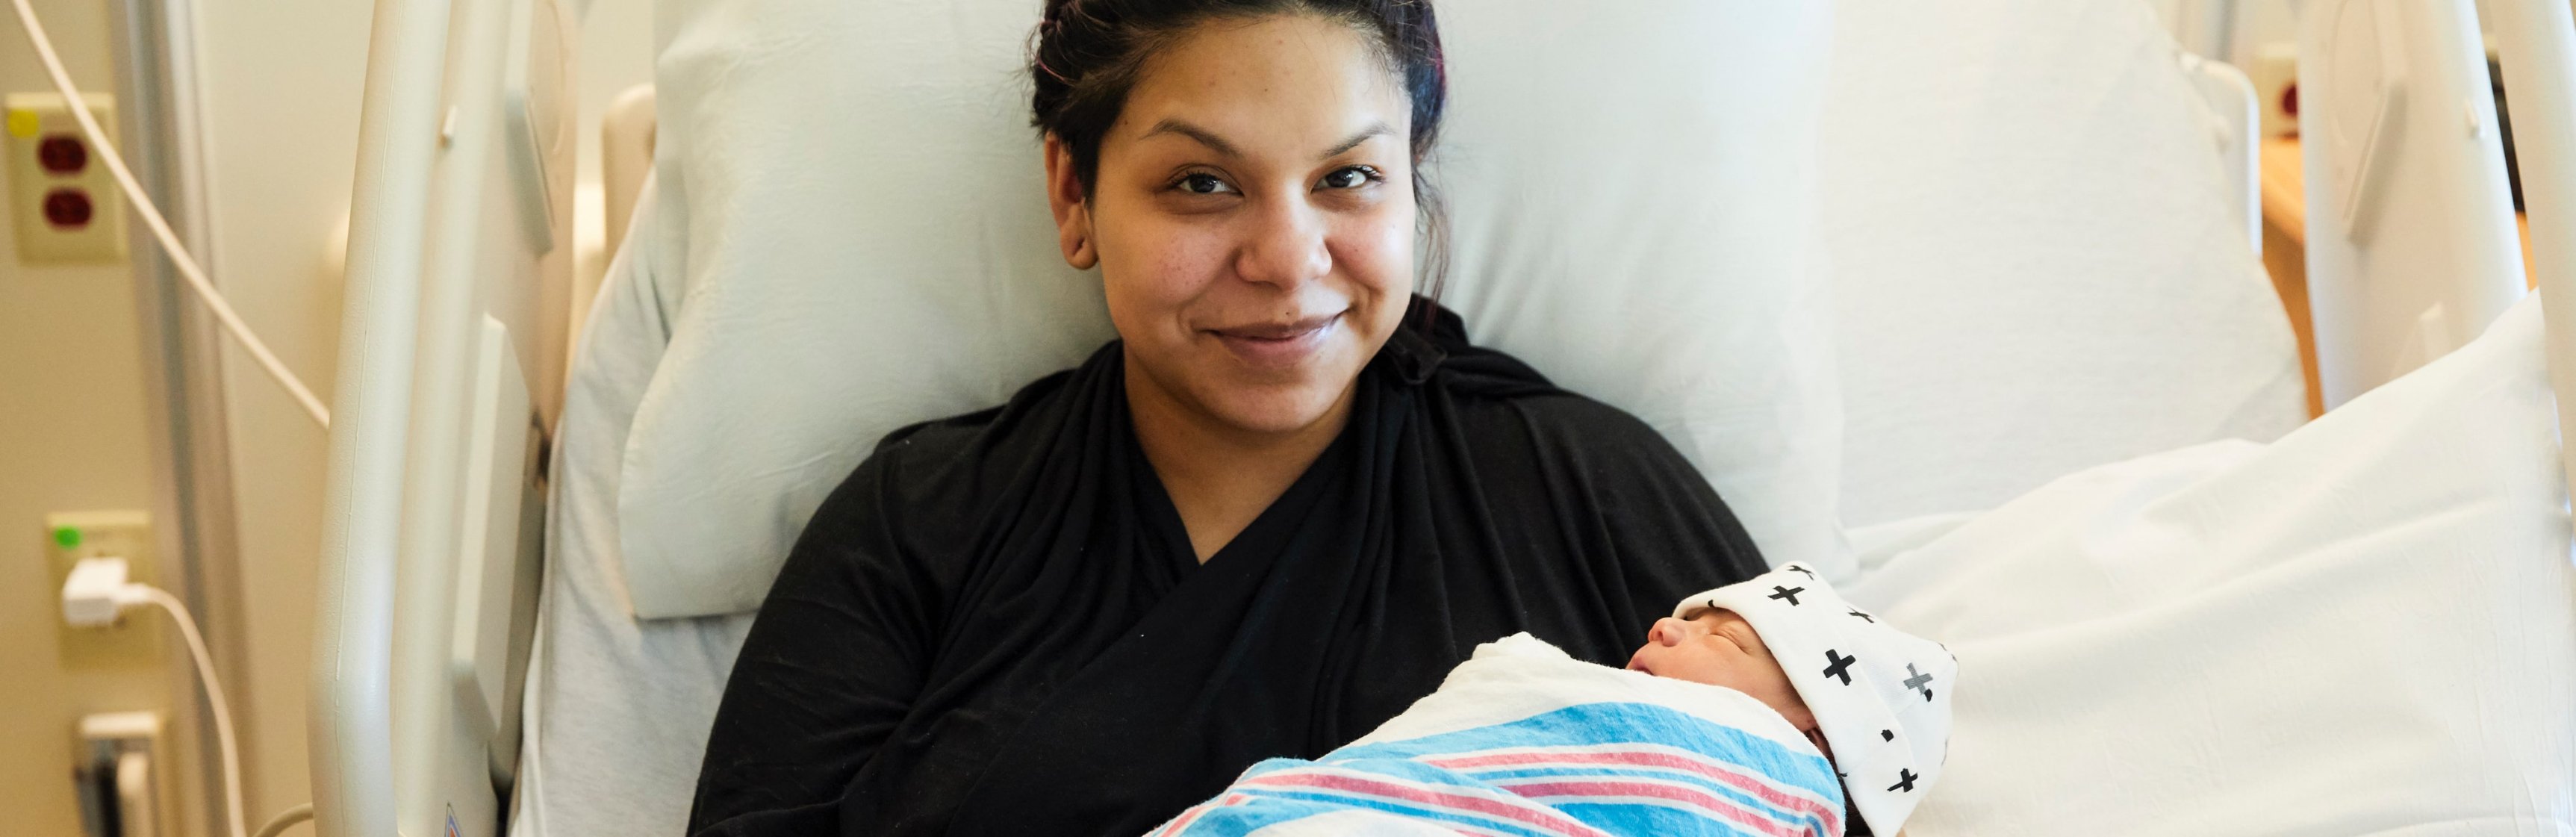 Mamá latina sonriente en una cama del hospital sostiene a su bebé recién nacido